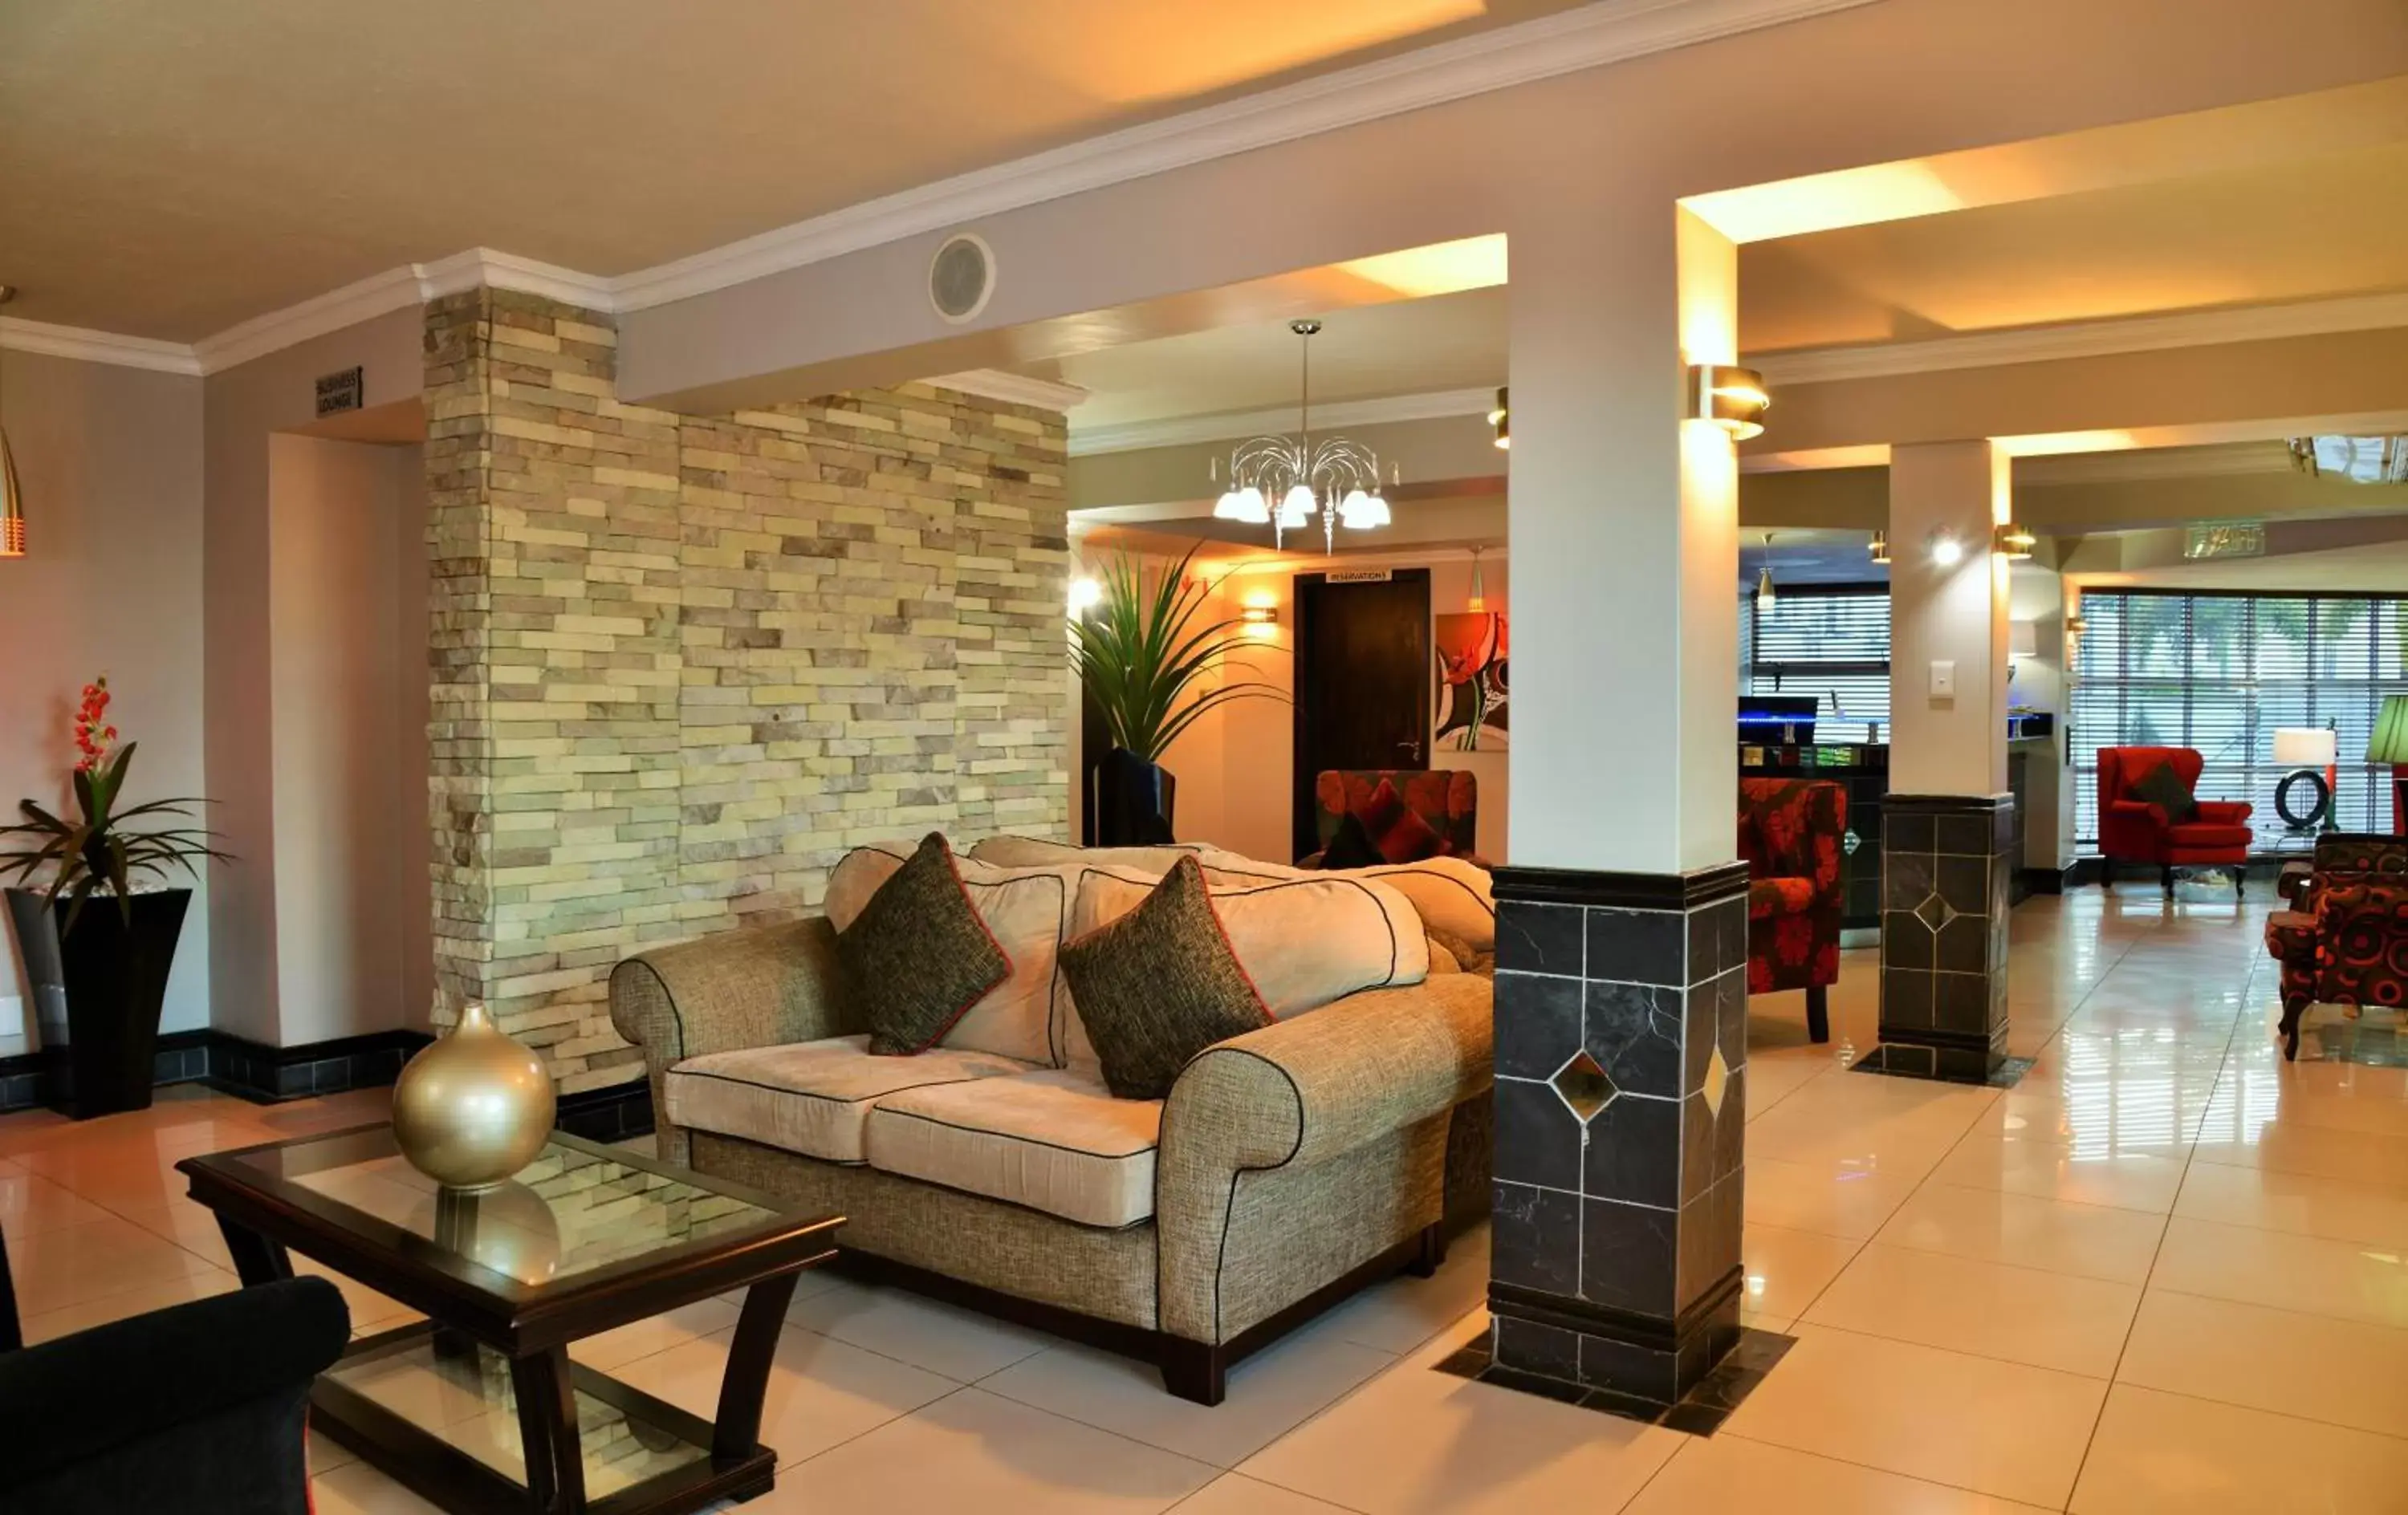 Lobby or reception in BON Hotel Empangeni